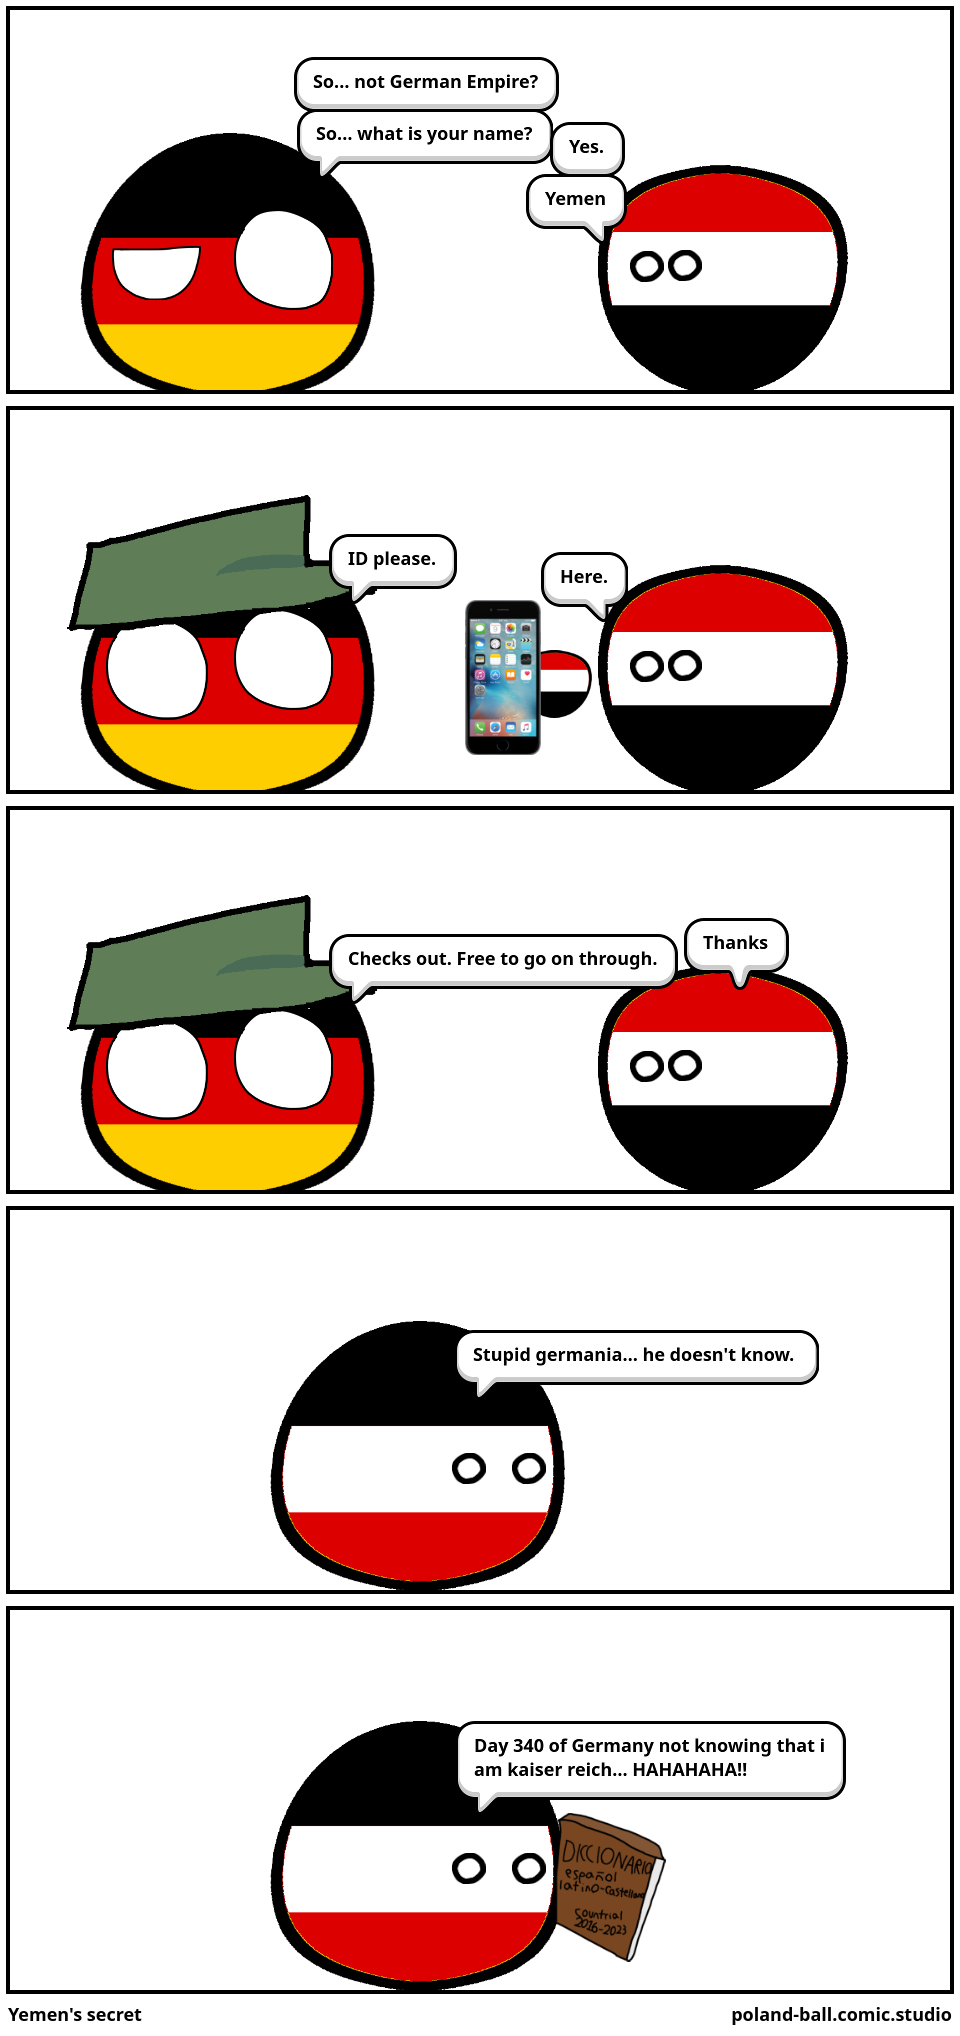 Yemen's secret